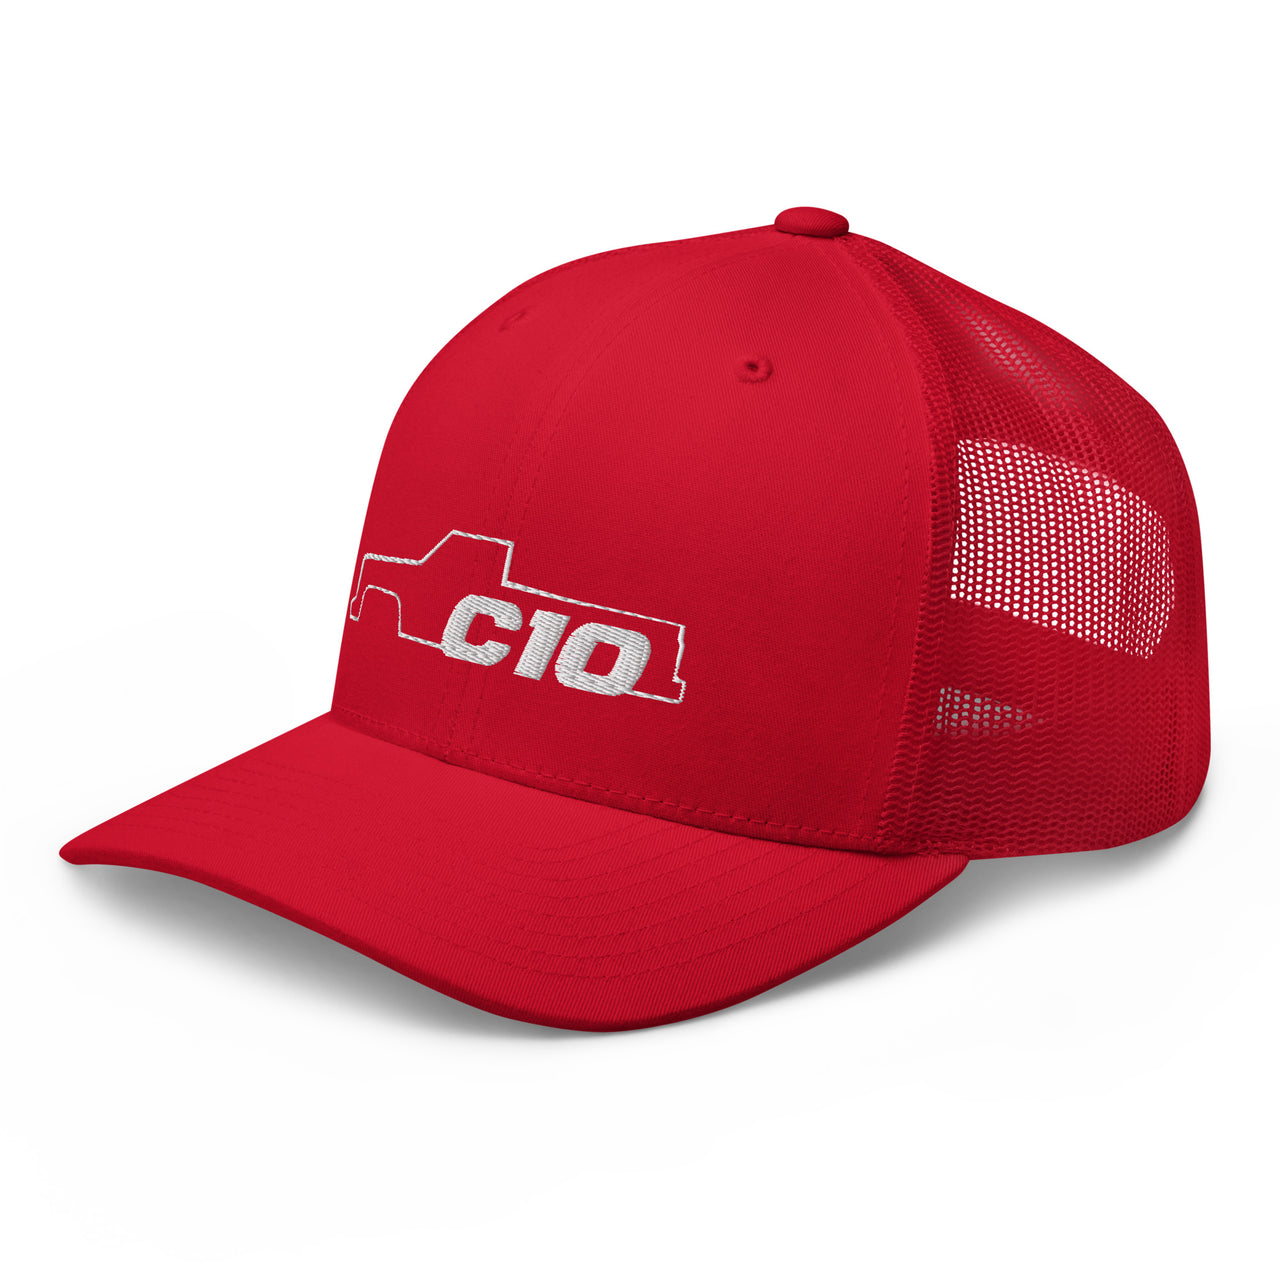 C10 Trucker hat in red 3/4 left view